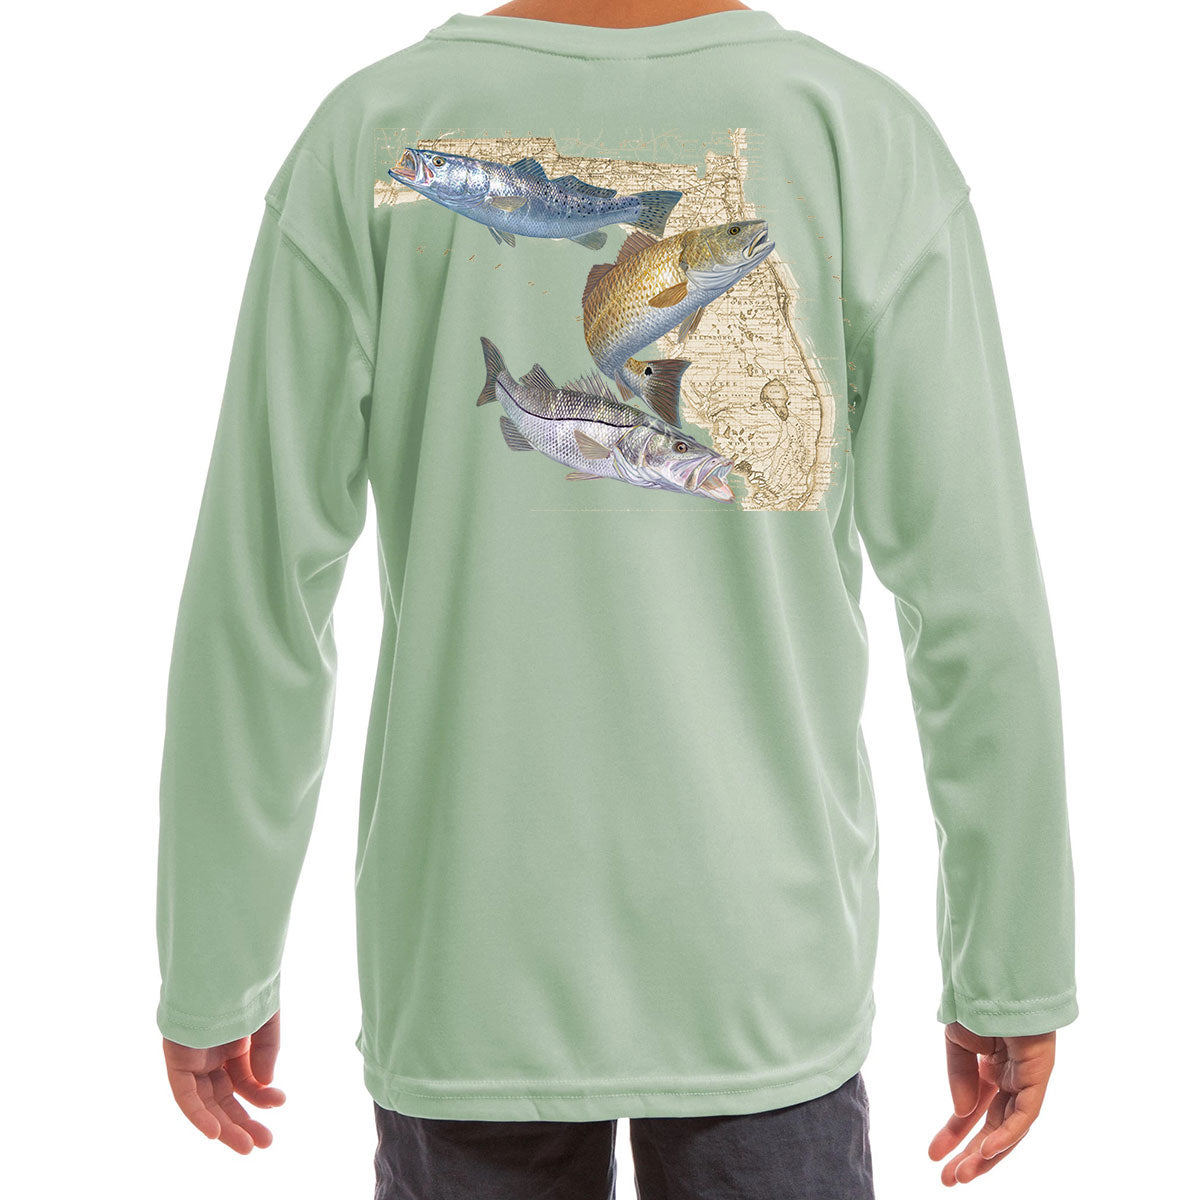 Youth Fishing Shirts - Red Rum Fishing & Spearfishing Wear